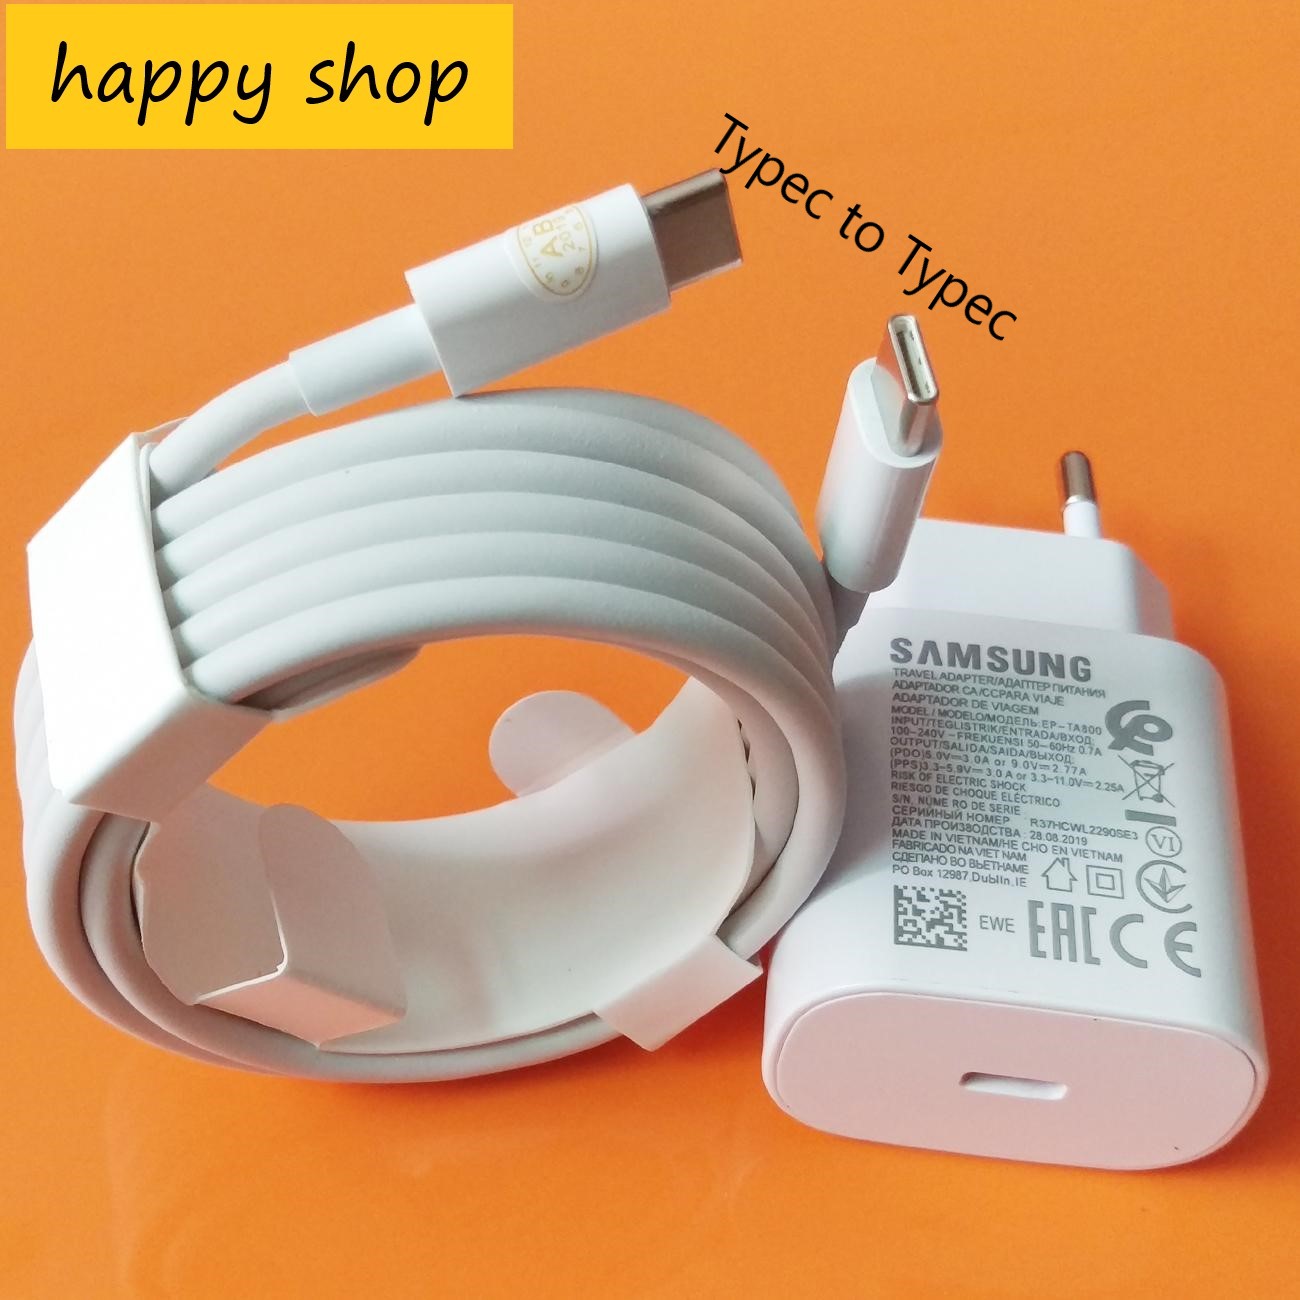 ( Củ Rời , Cáp Rời ) - Bộ Sạc Siêu Nhanh 25w , Củ + Cáp Adaptor 25W + Cable chuẩn C to C Dùng Cho Samsung - Bảo Hành 12 Tháng Đổi Mới. Happy Shop